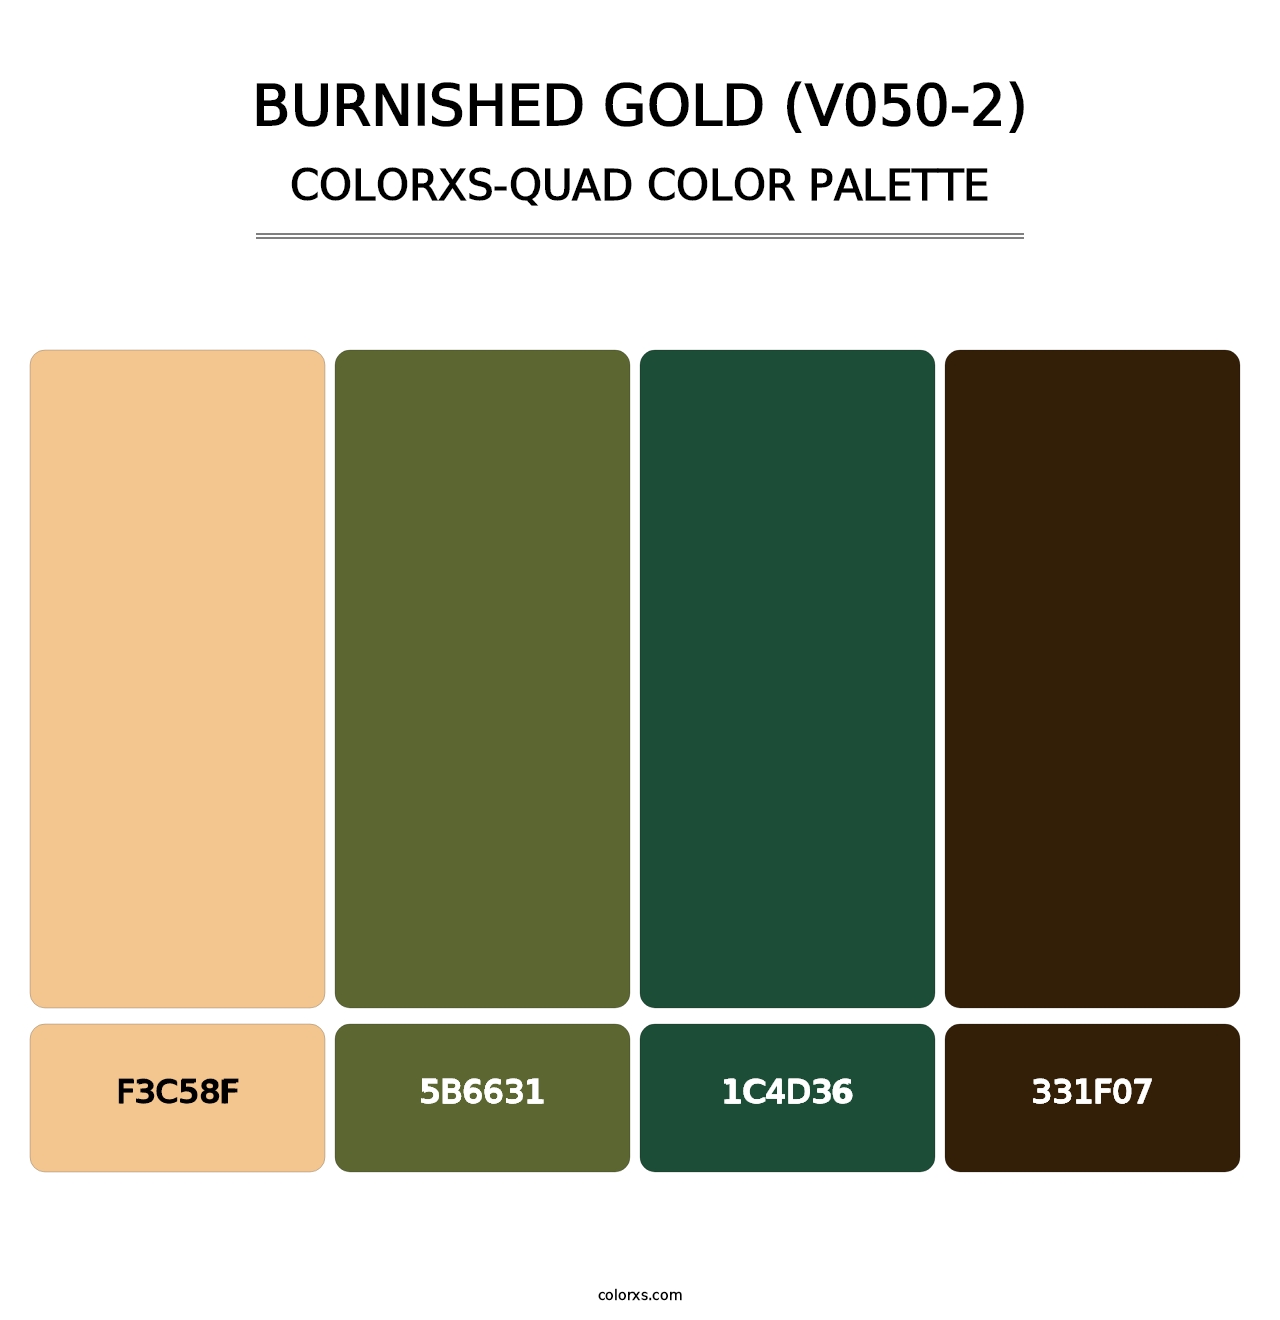 Burnished Gold (V050-2) - Colorxs Quad Palette